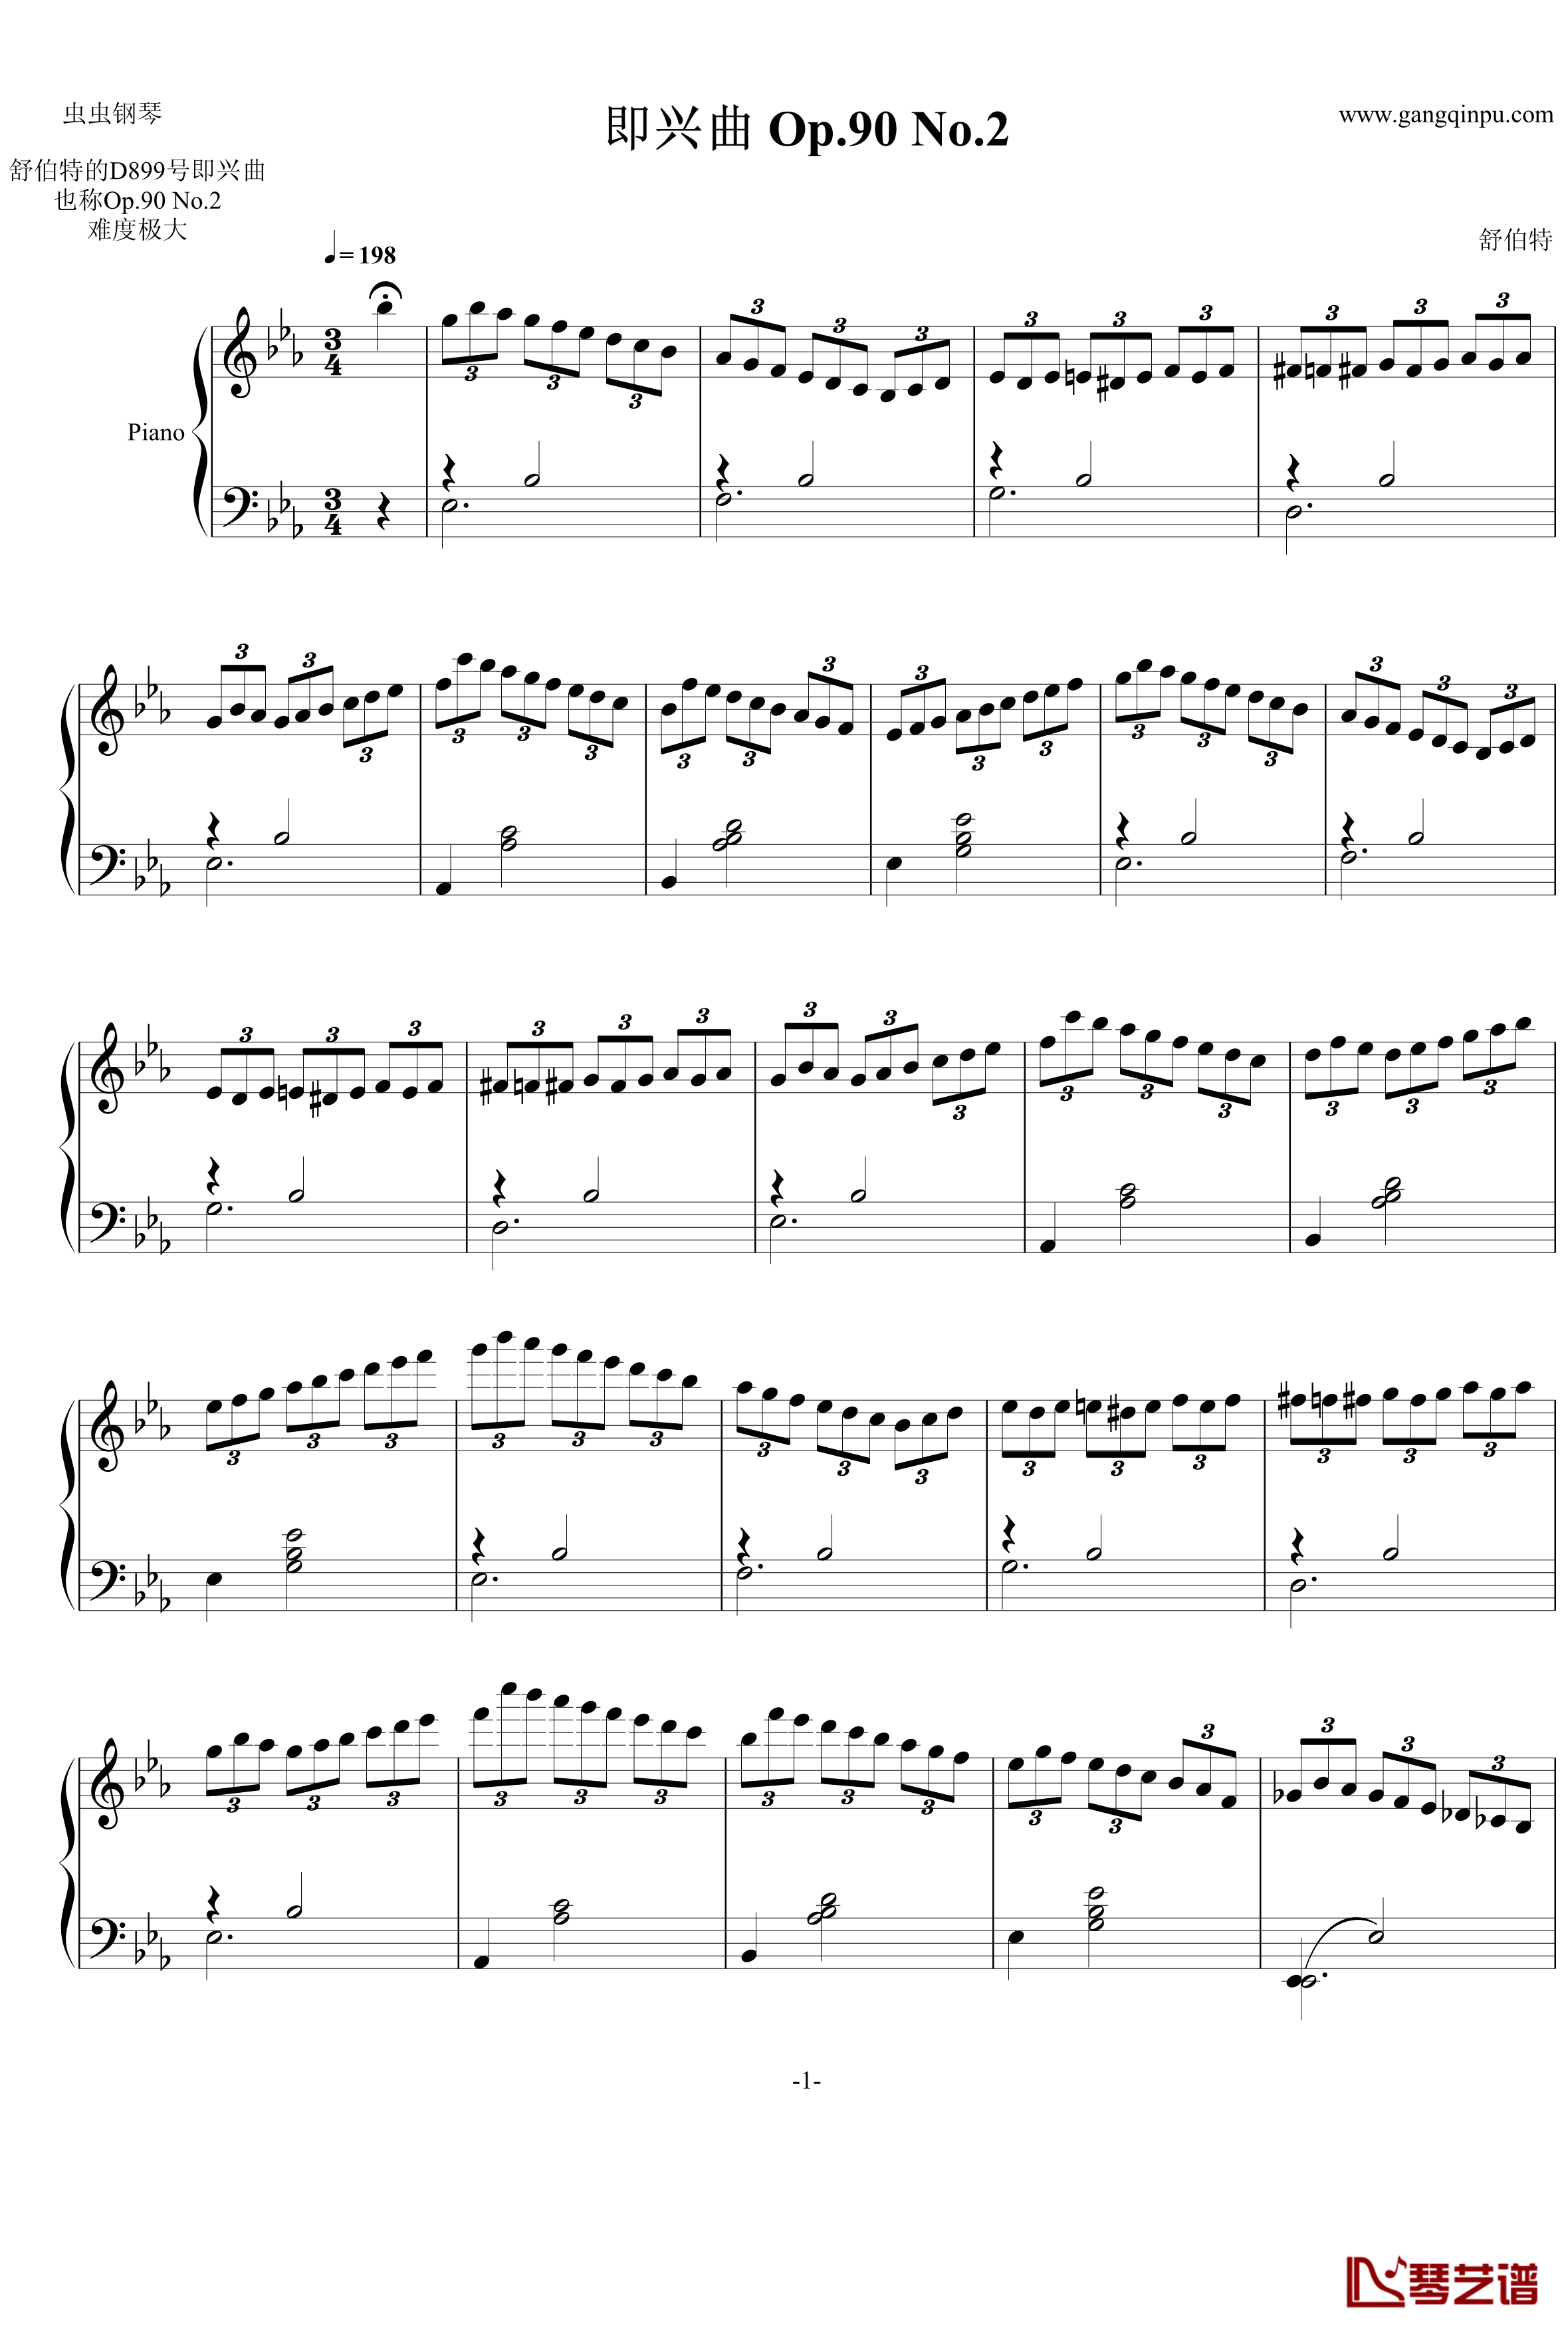 即兴曲Op.90 No.2钢琴谱-舒伯特-又名D899 No.21